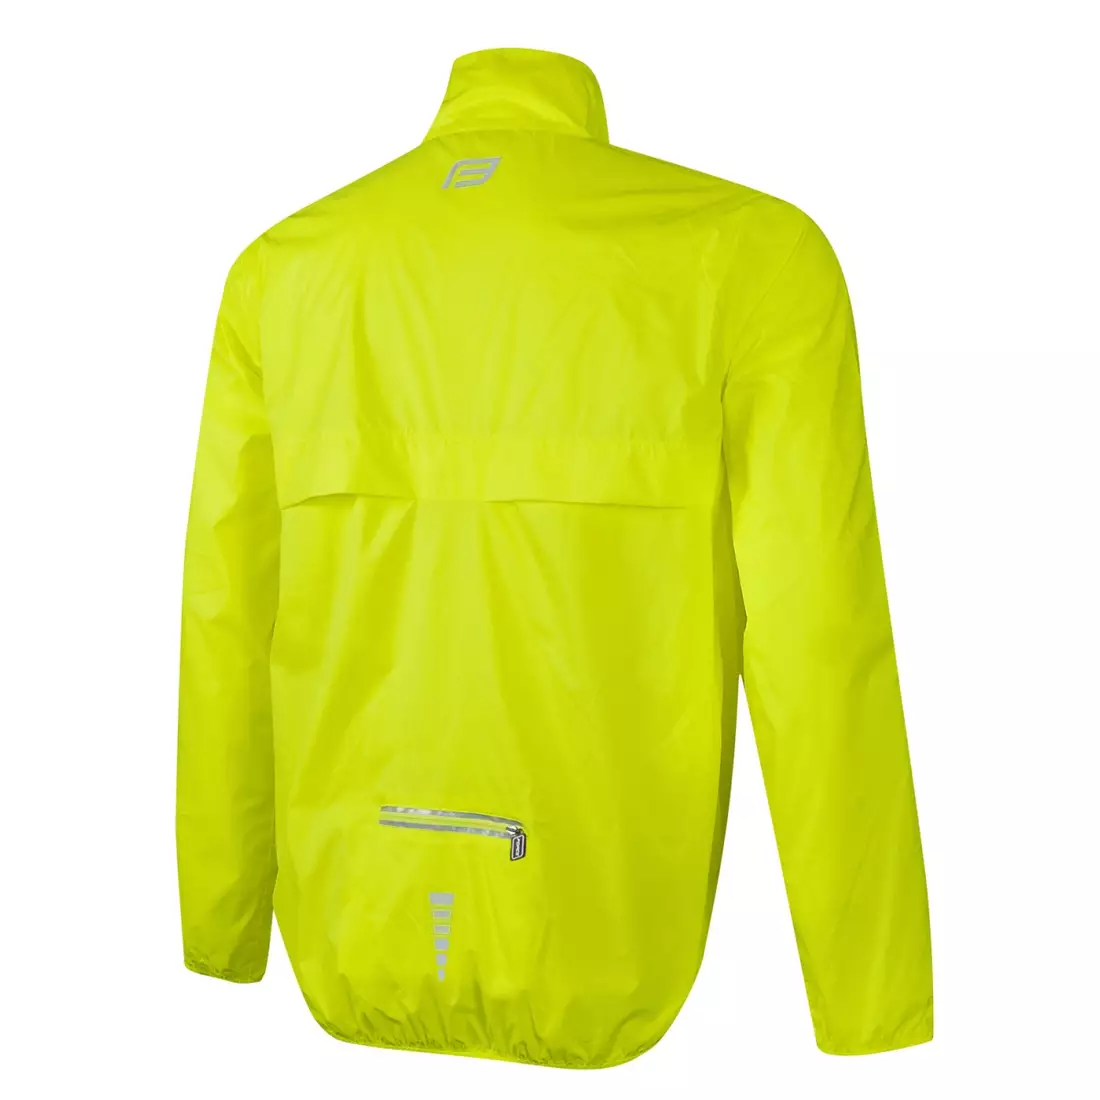 FORCE X48 könnyű esőálló kerékpáros kabát, fluor 899795